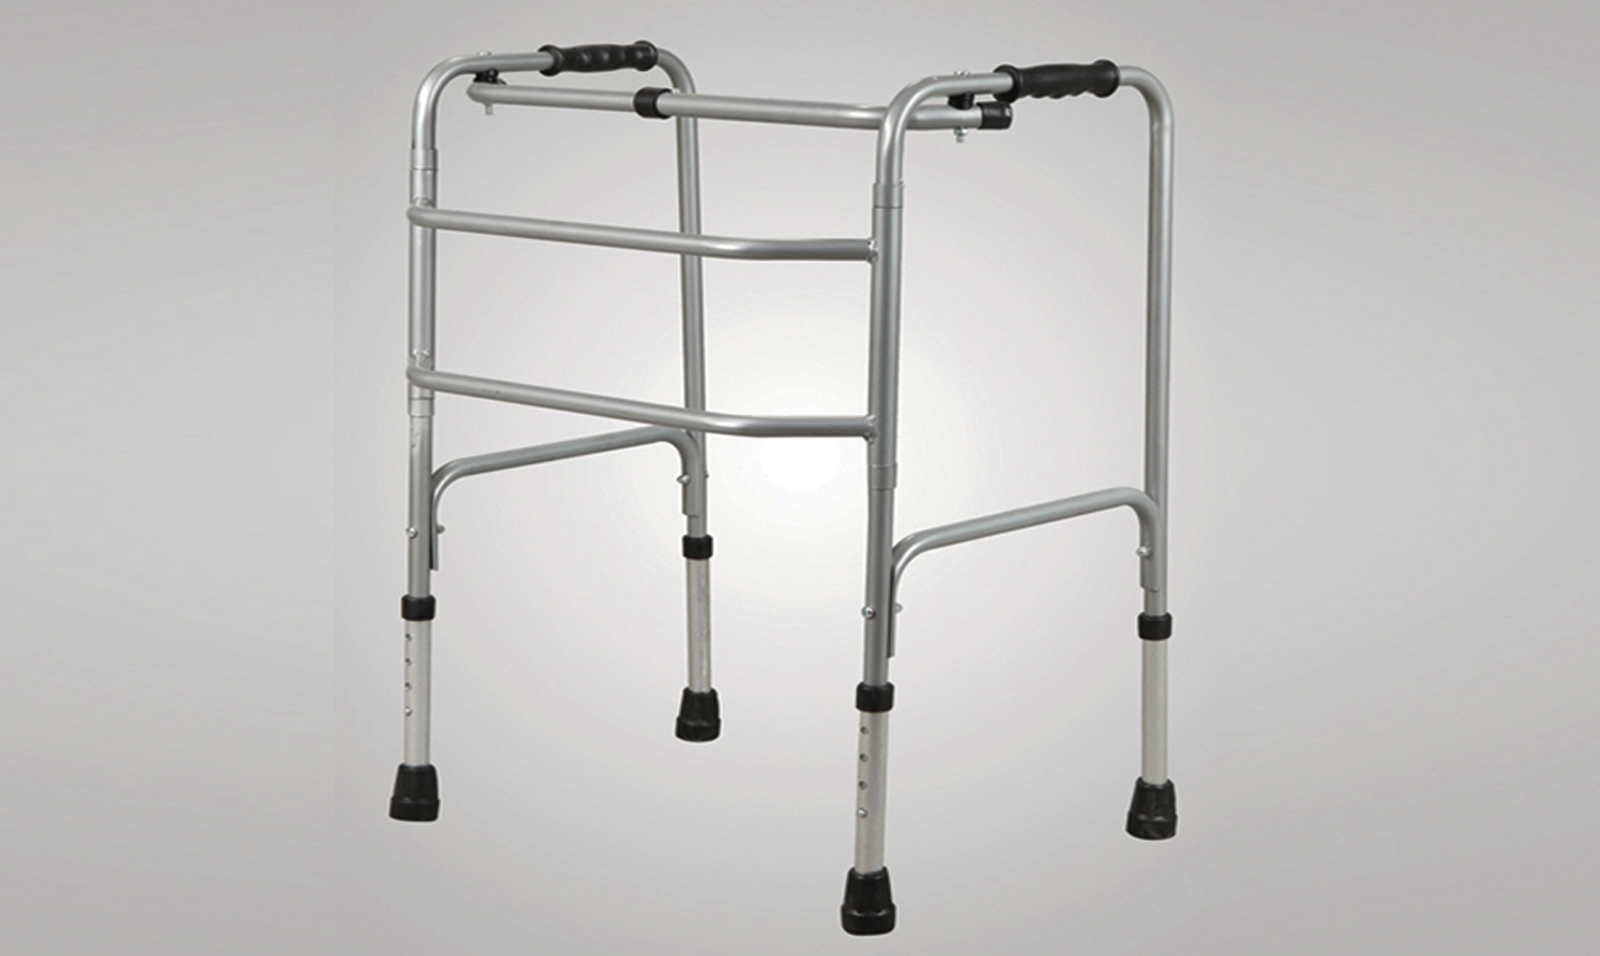 For Disables & Elderly